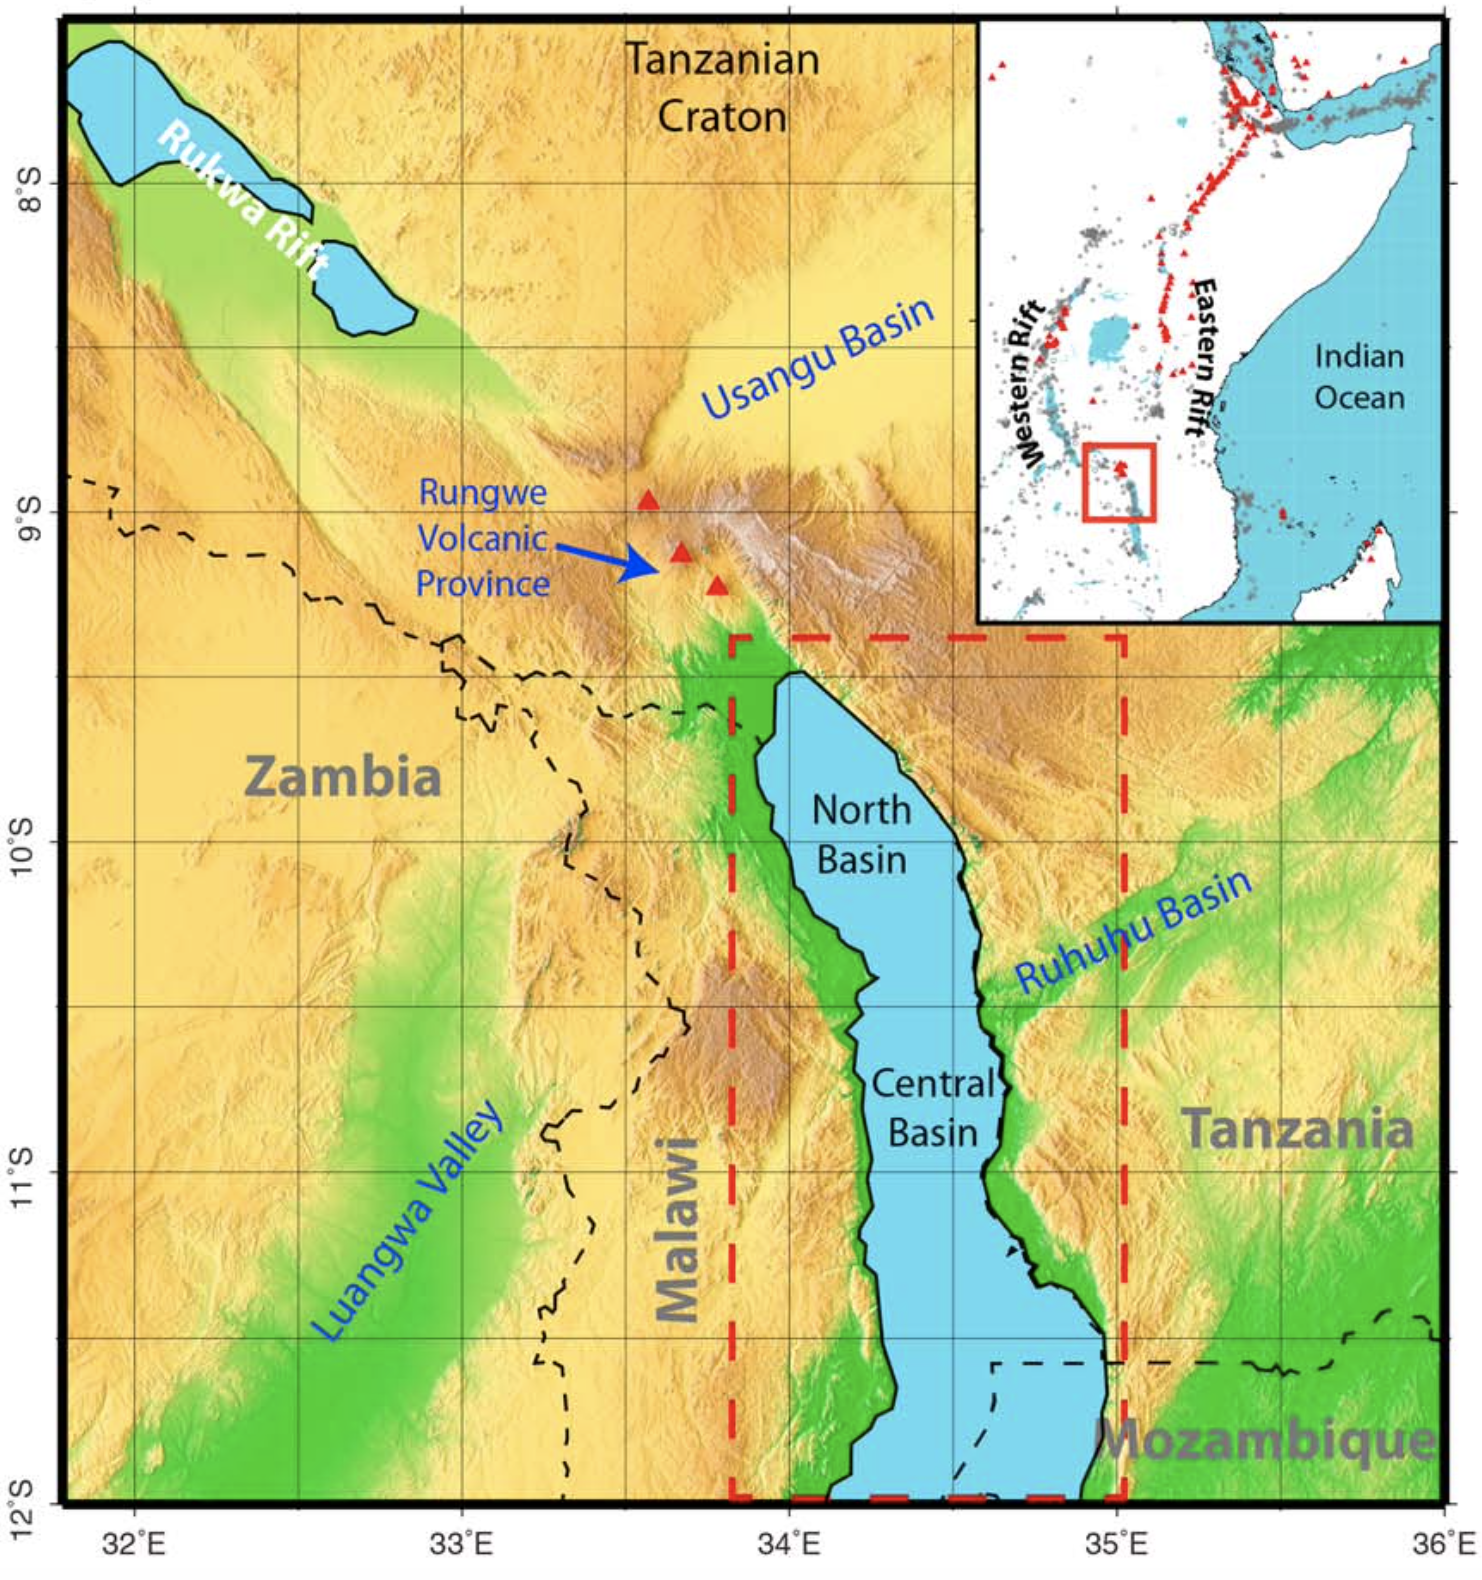 Northern Malawi Rift (Accardo et al., 2018)